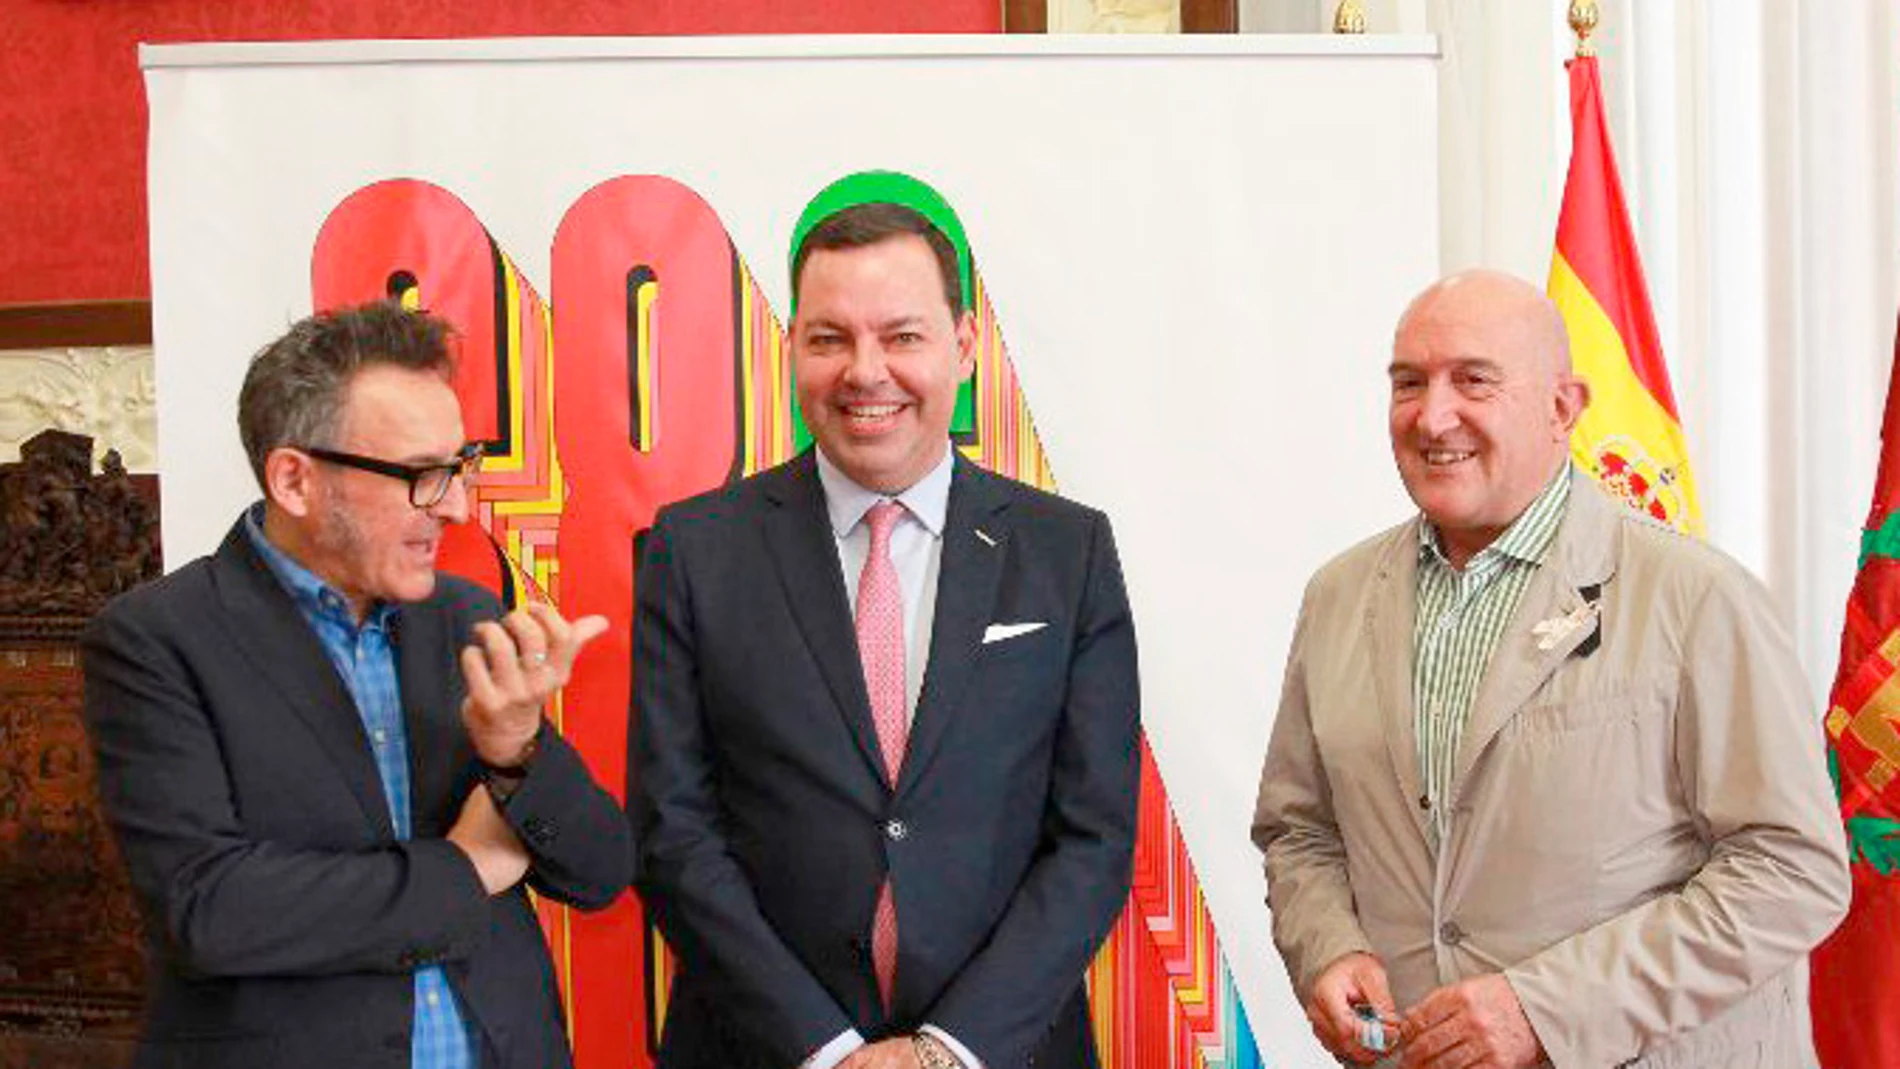 El alcalde de Valladolid, Jesús Julio Carnero; el director general de FUNDOS, José María Viejo; y el director de Seminci, José Luis Cienfuegos presentan el acuerdo